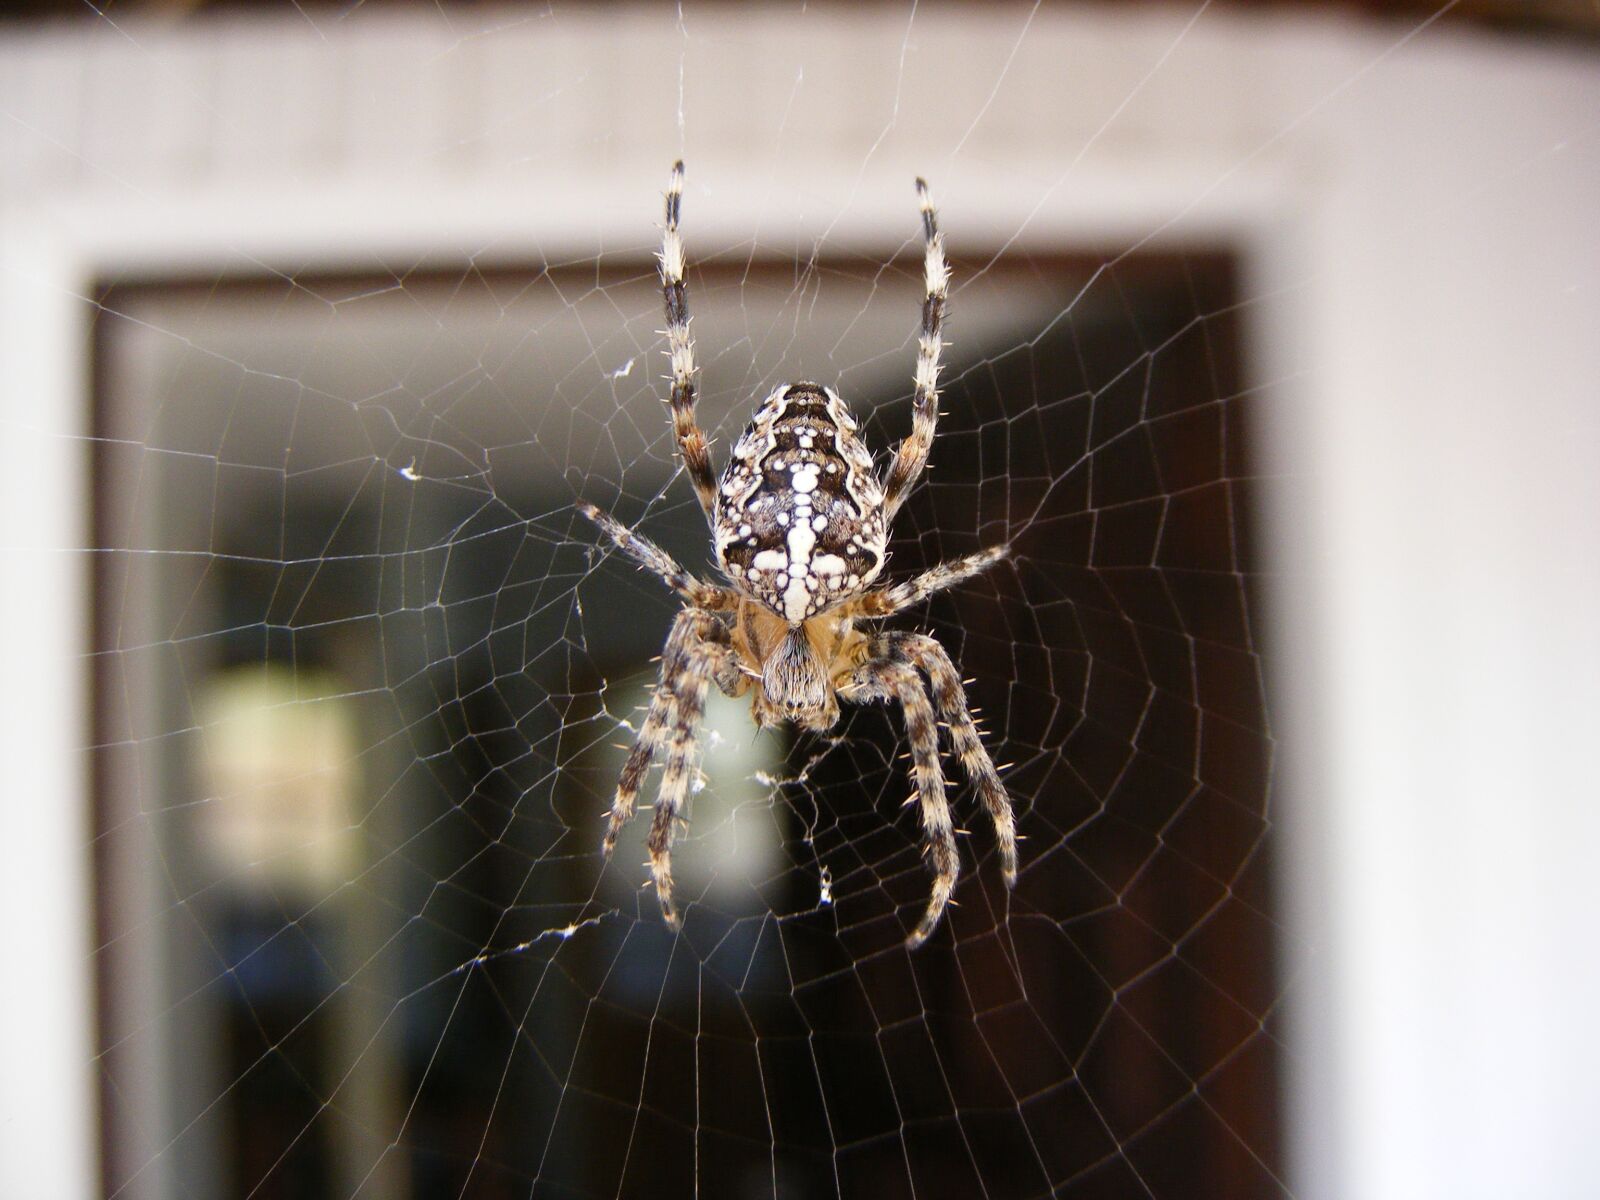 Fujifilm FinePix S5700 S700 sample photo. Spider, nature, cobweb photography